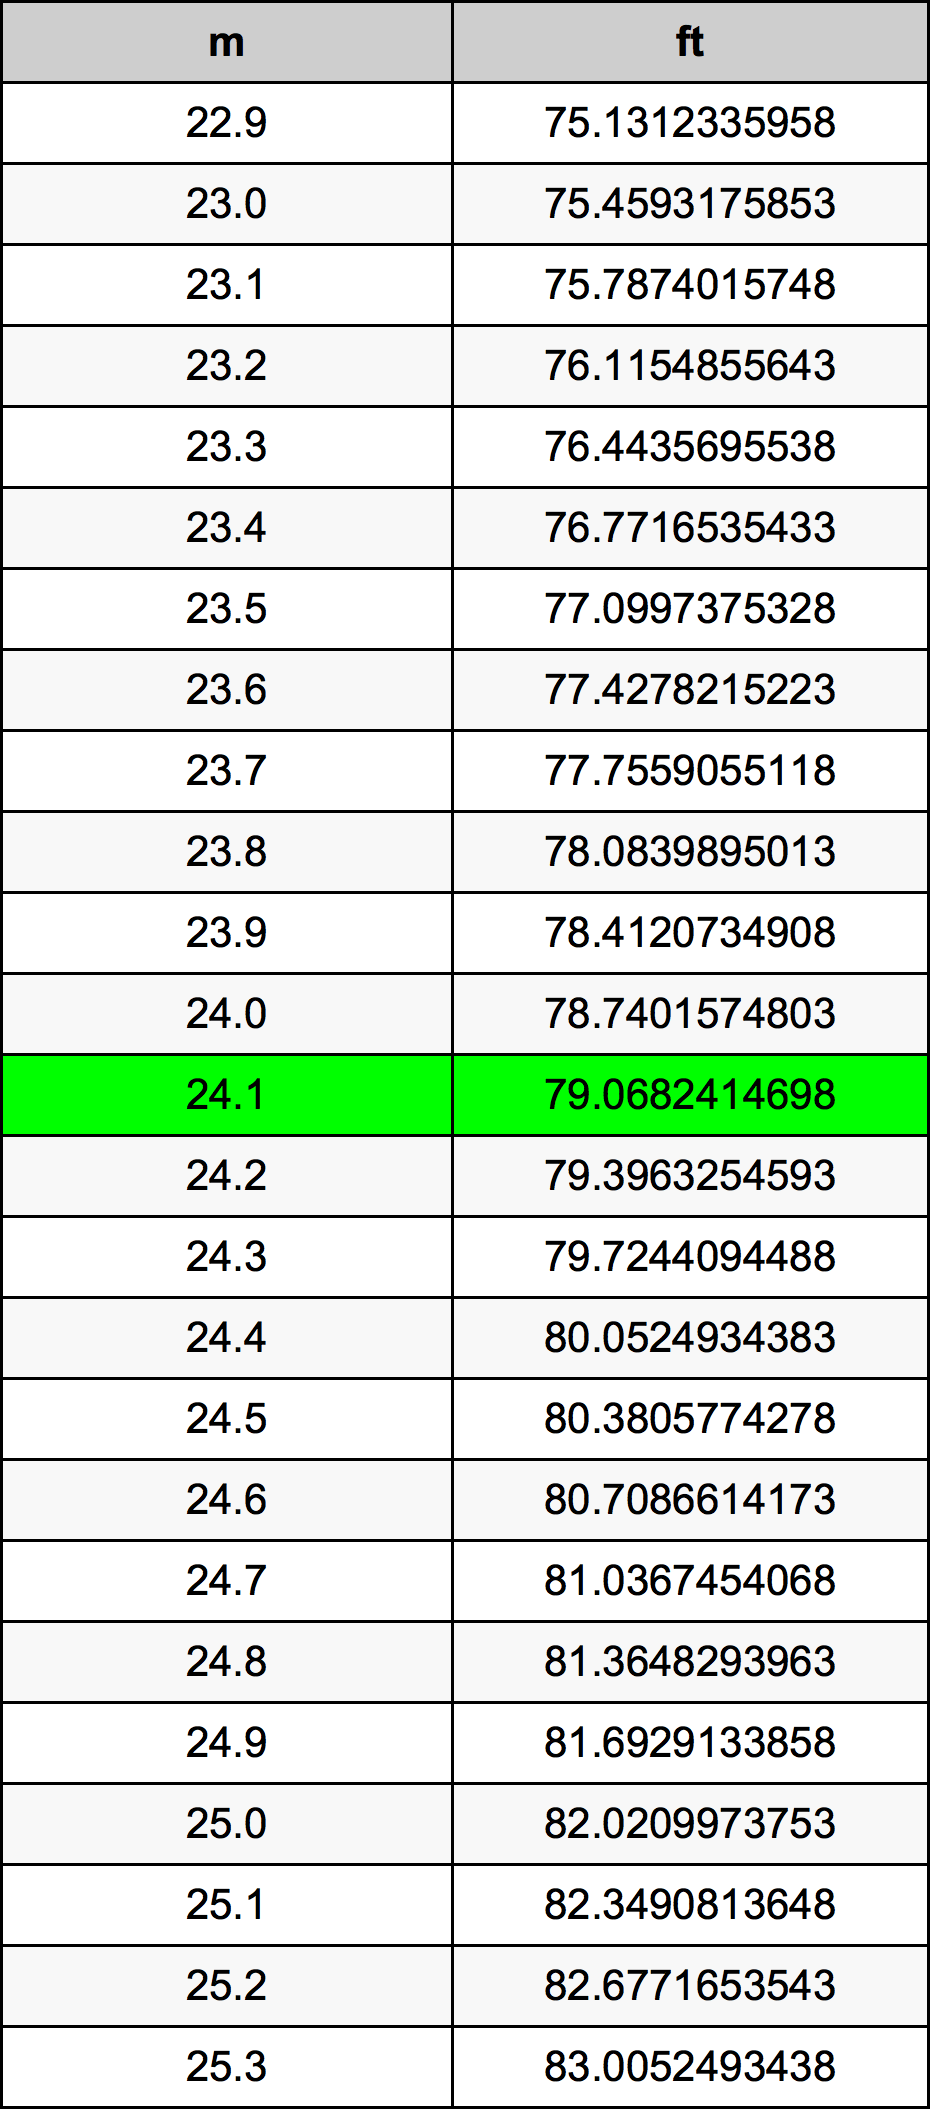 24.1 Metru tabelul de conversie